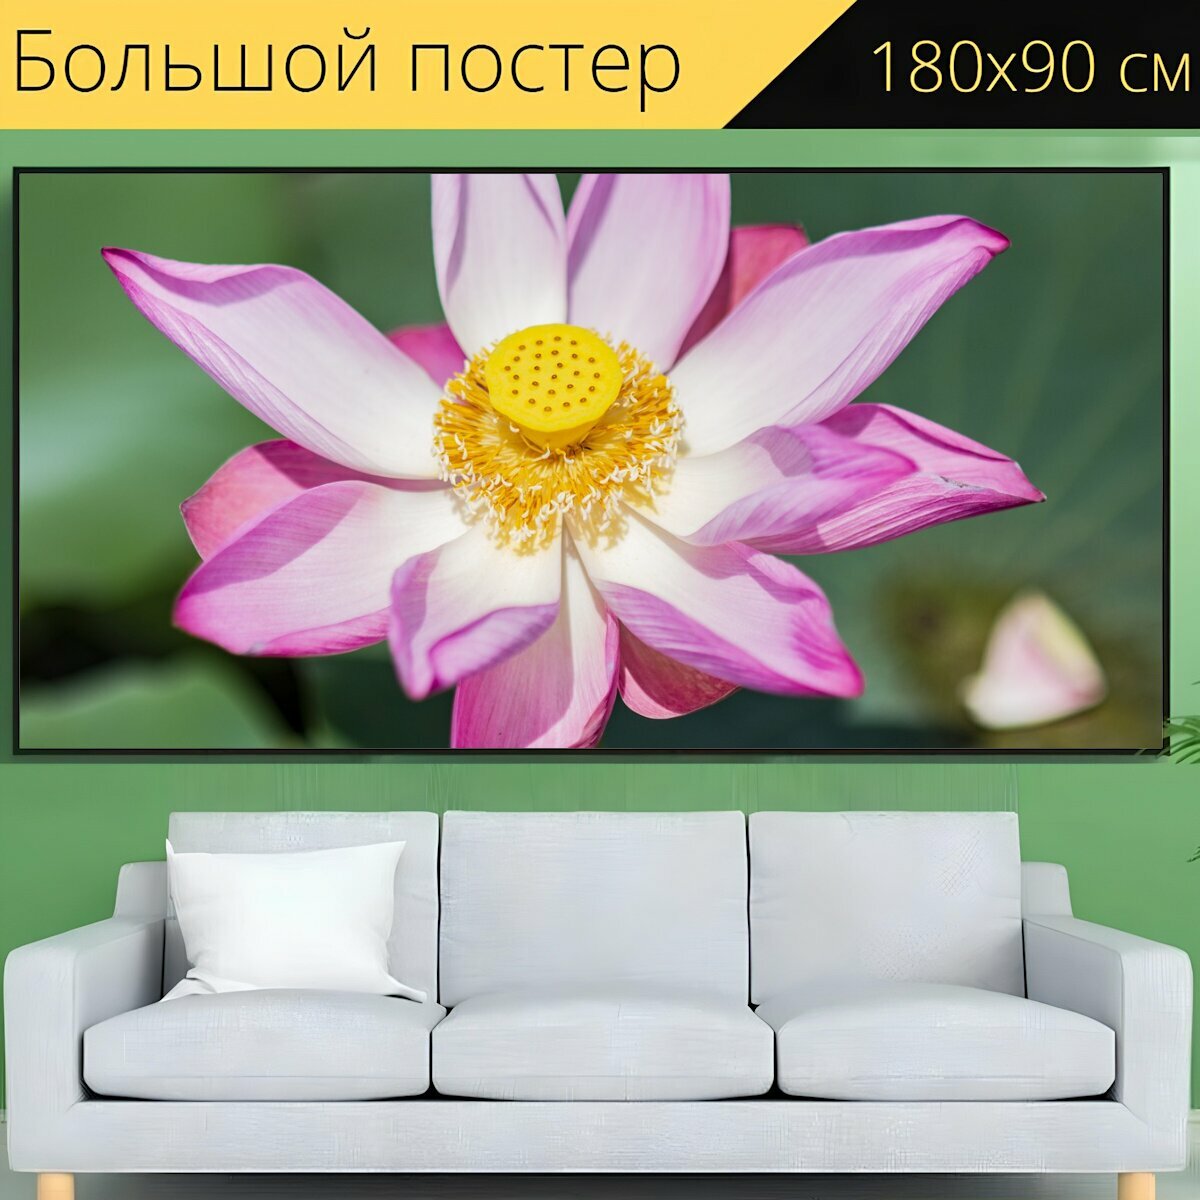 Большой постер "Лотос, цветок, завод" 180 x 90 см. для интерьера